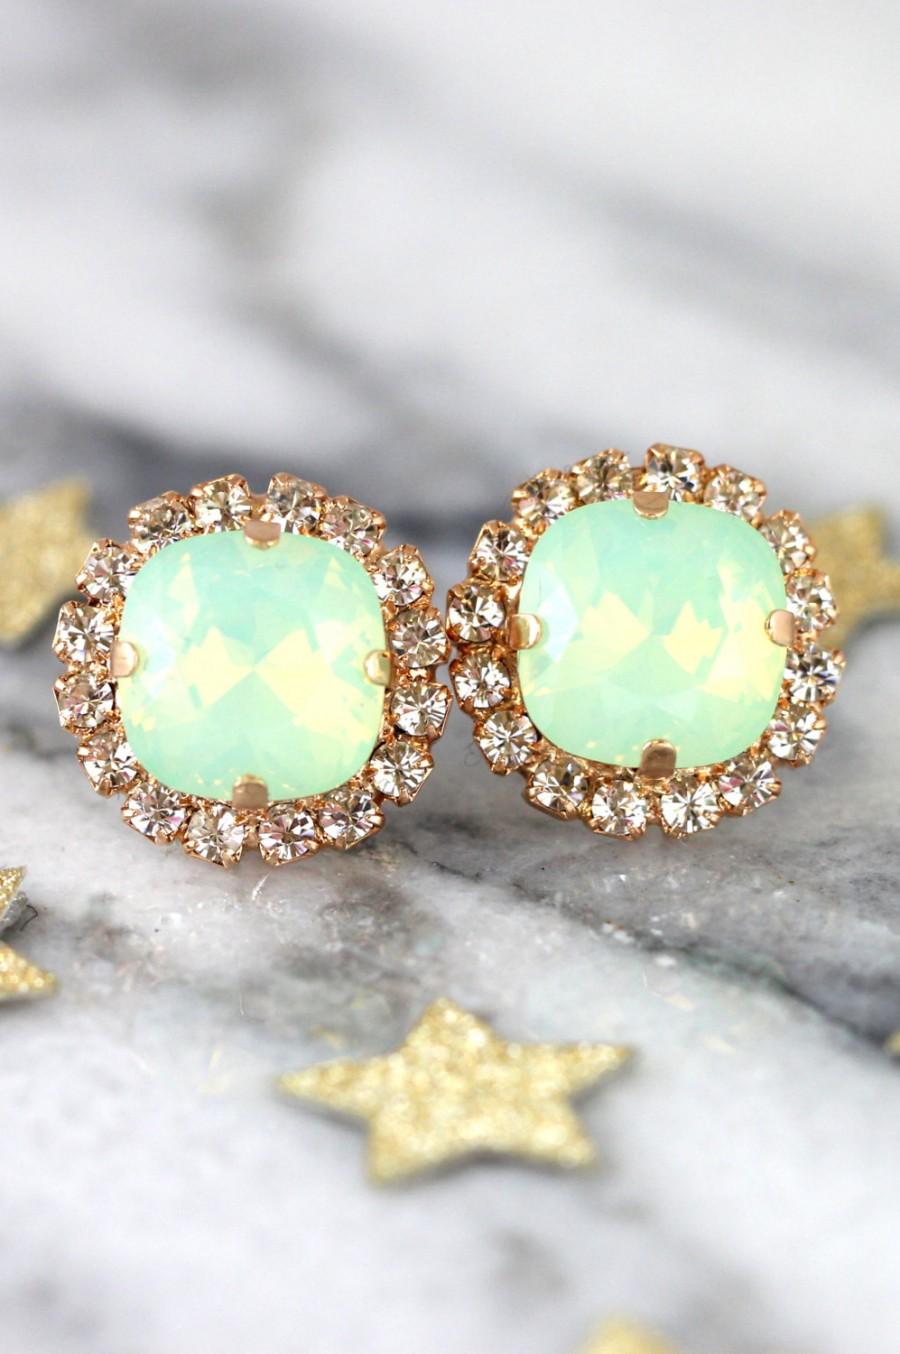 Wedding - Mint Earrings,Mint Opal Earrings,Mint Opal Swarovski Earrings,Rose Gold Earrings,Bridesmaids Earrings,Bridal Earrings,Mint Opal Studs